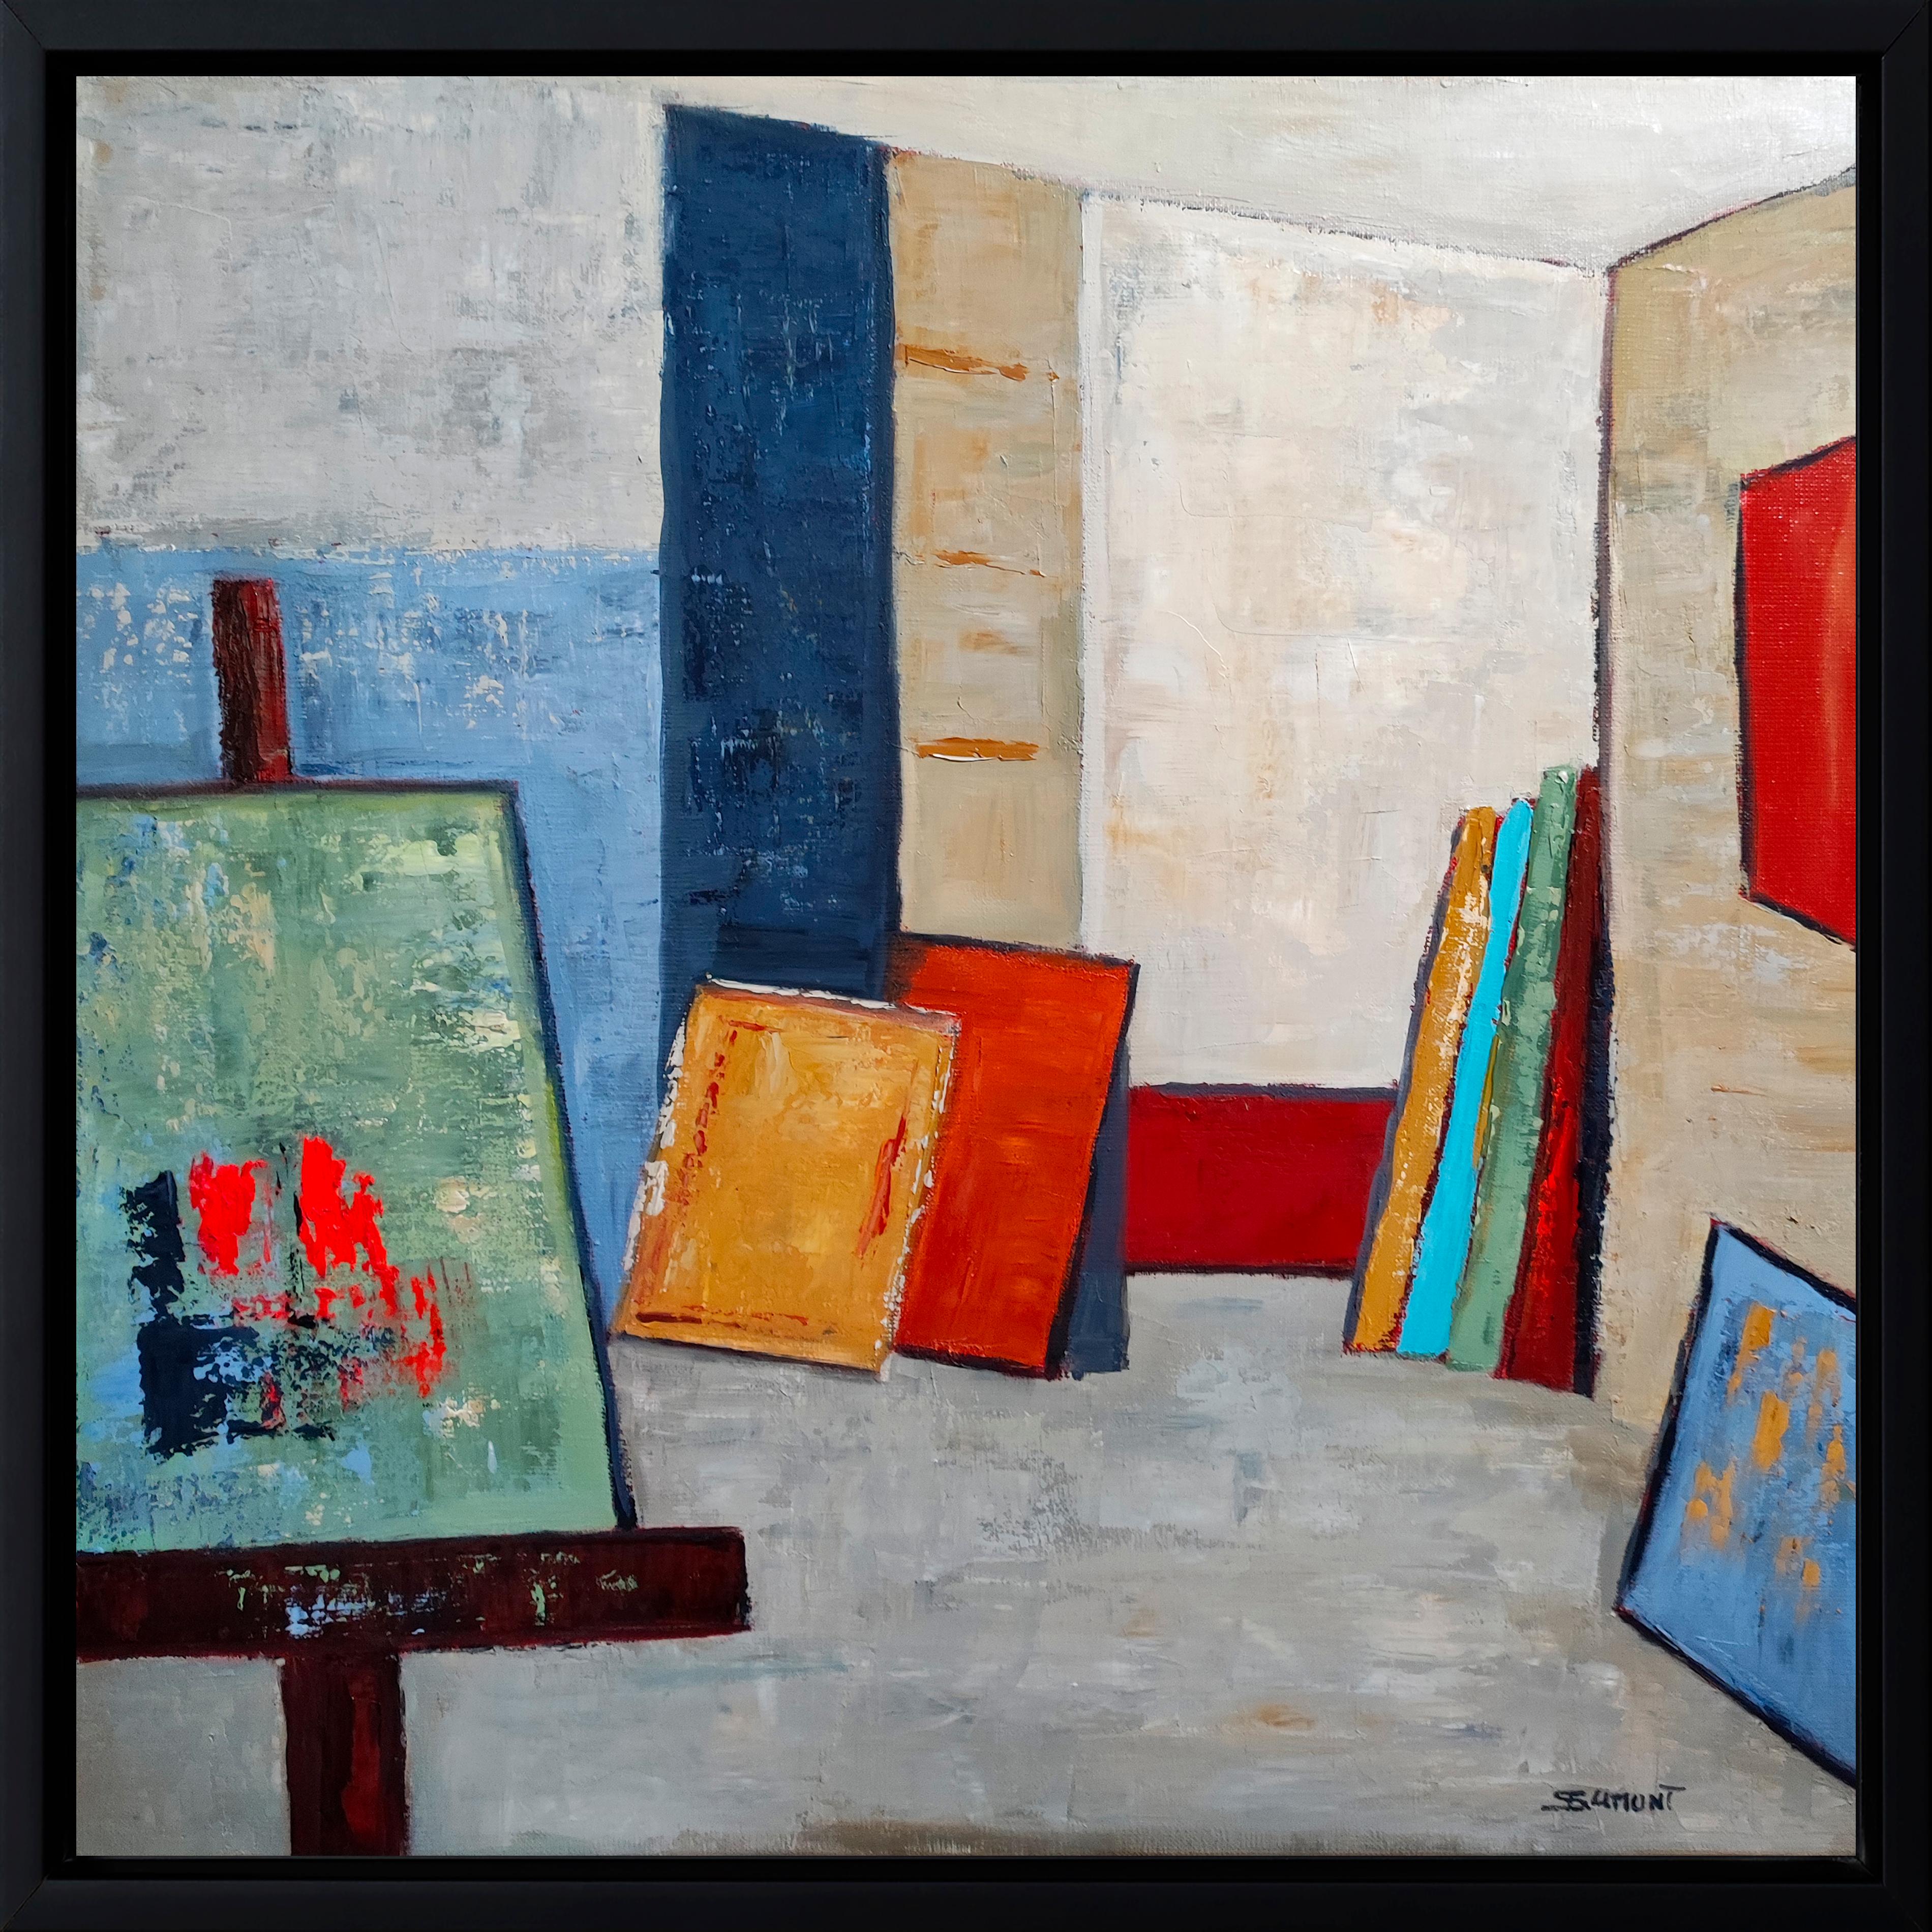 Abstract Painting SOPHIE DUMONT - Studio A 18,  abstrait, huile sur toile, contemporain, expressionnisme, art français